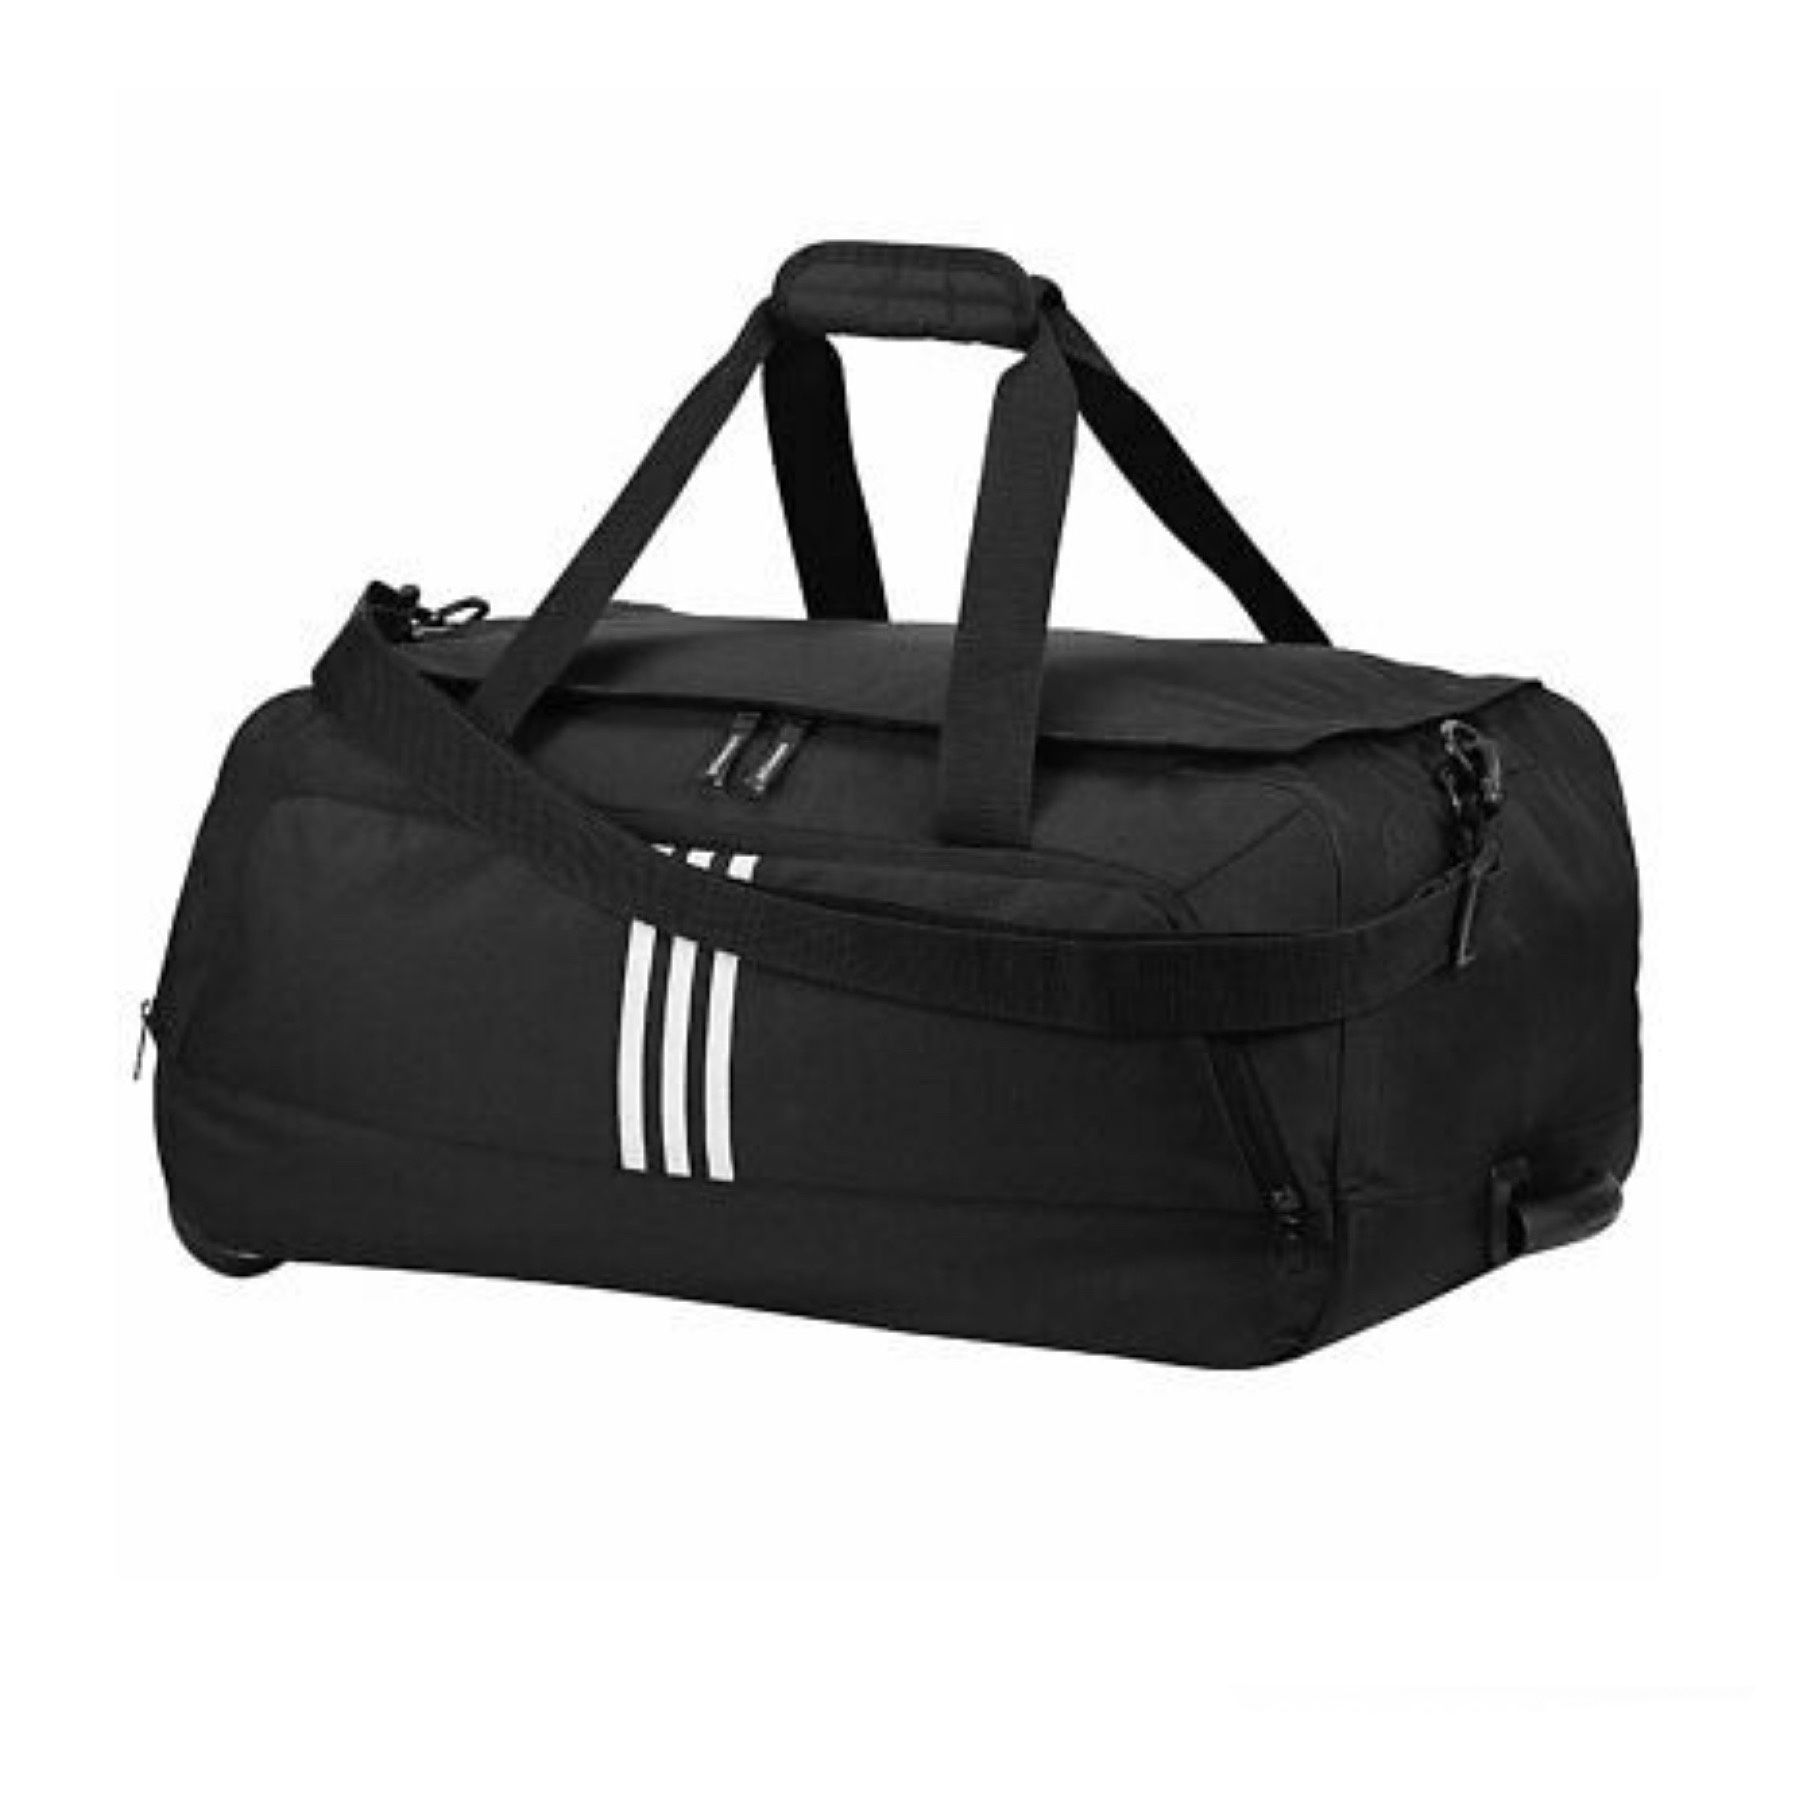 Adidas Golf Medium Travel Gear Duffle Bag